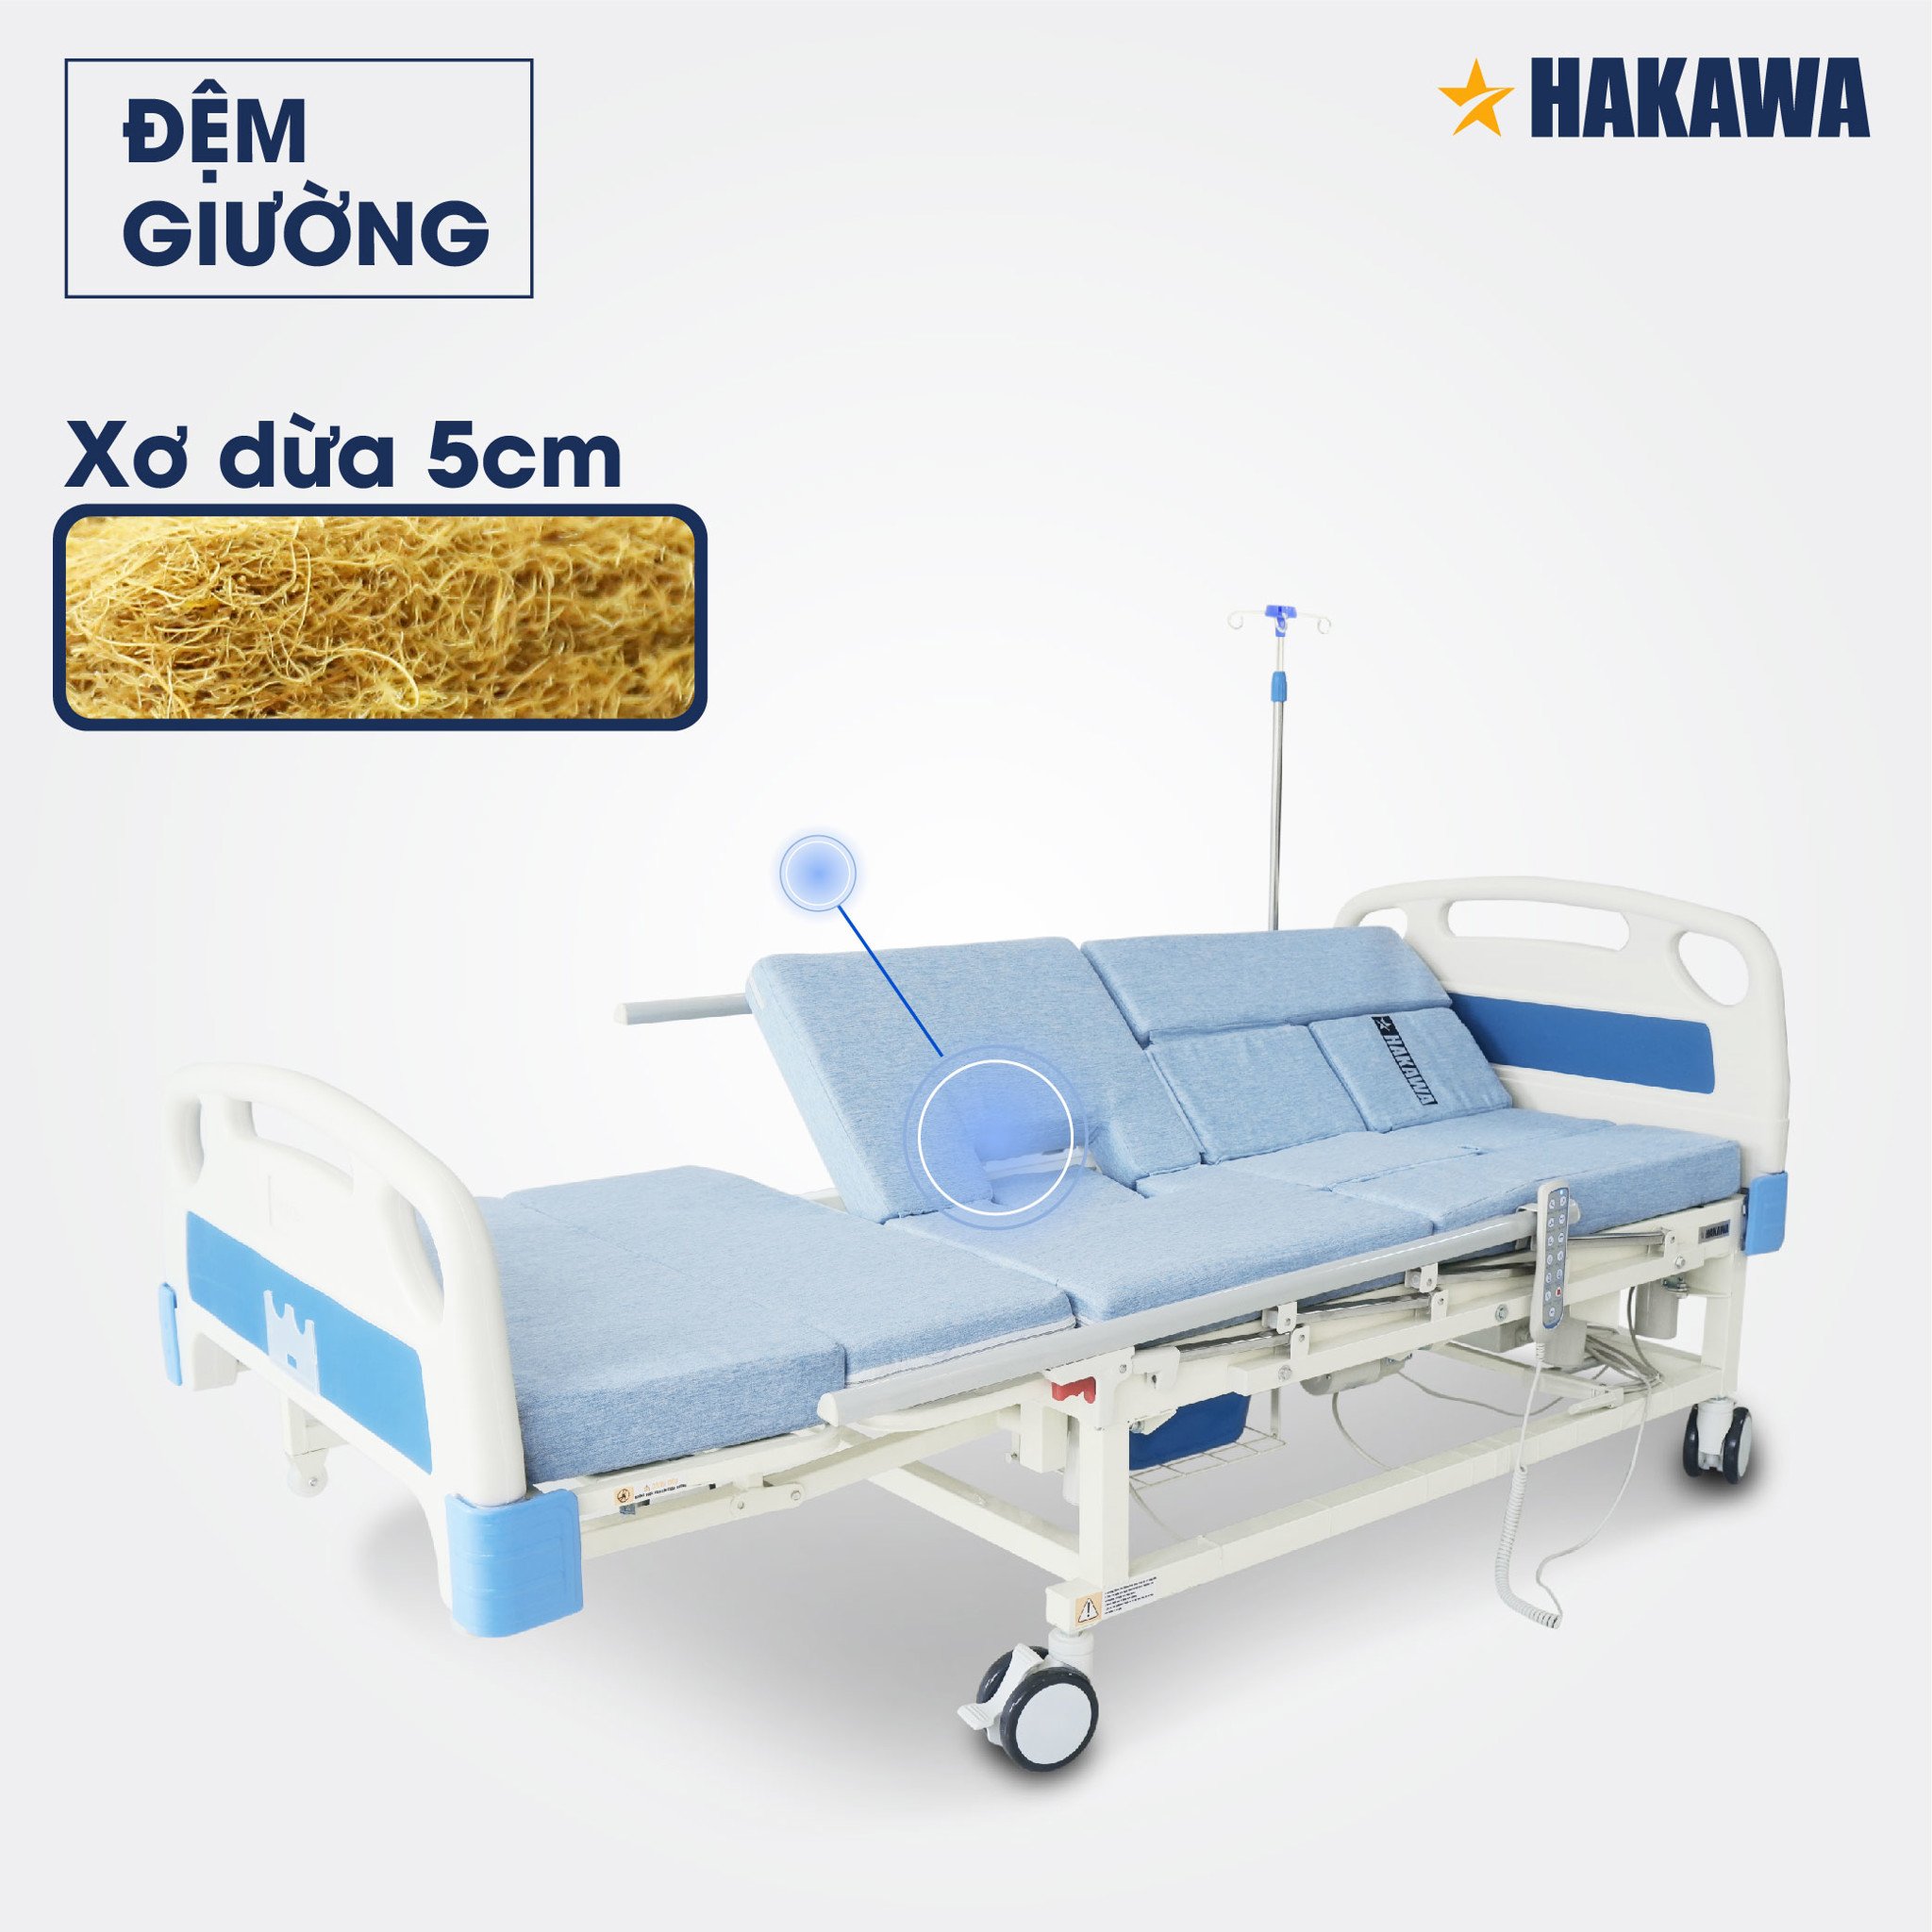 Đệm giường y tế đa năng Hakawa HK-D75 bằng xơ dừa dày 5cm